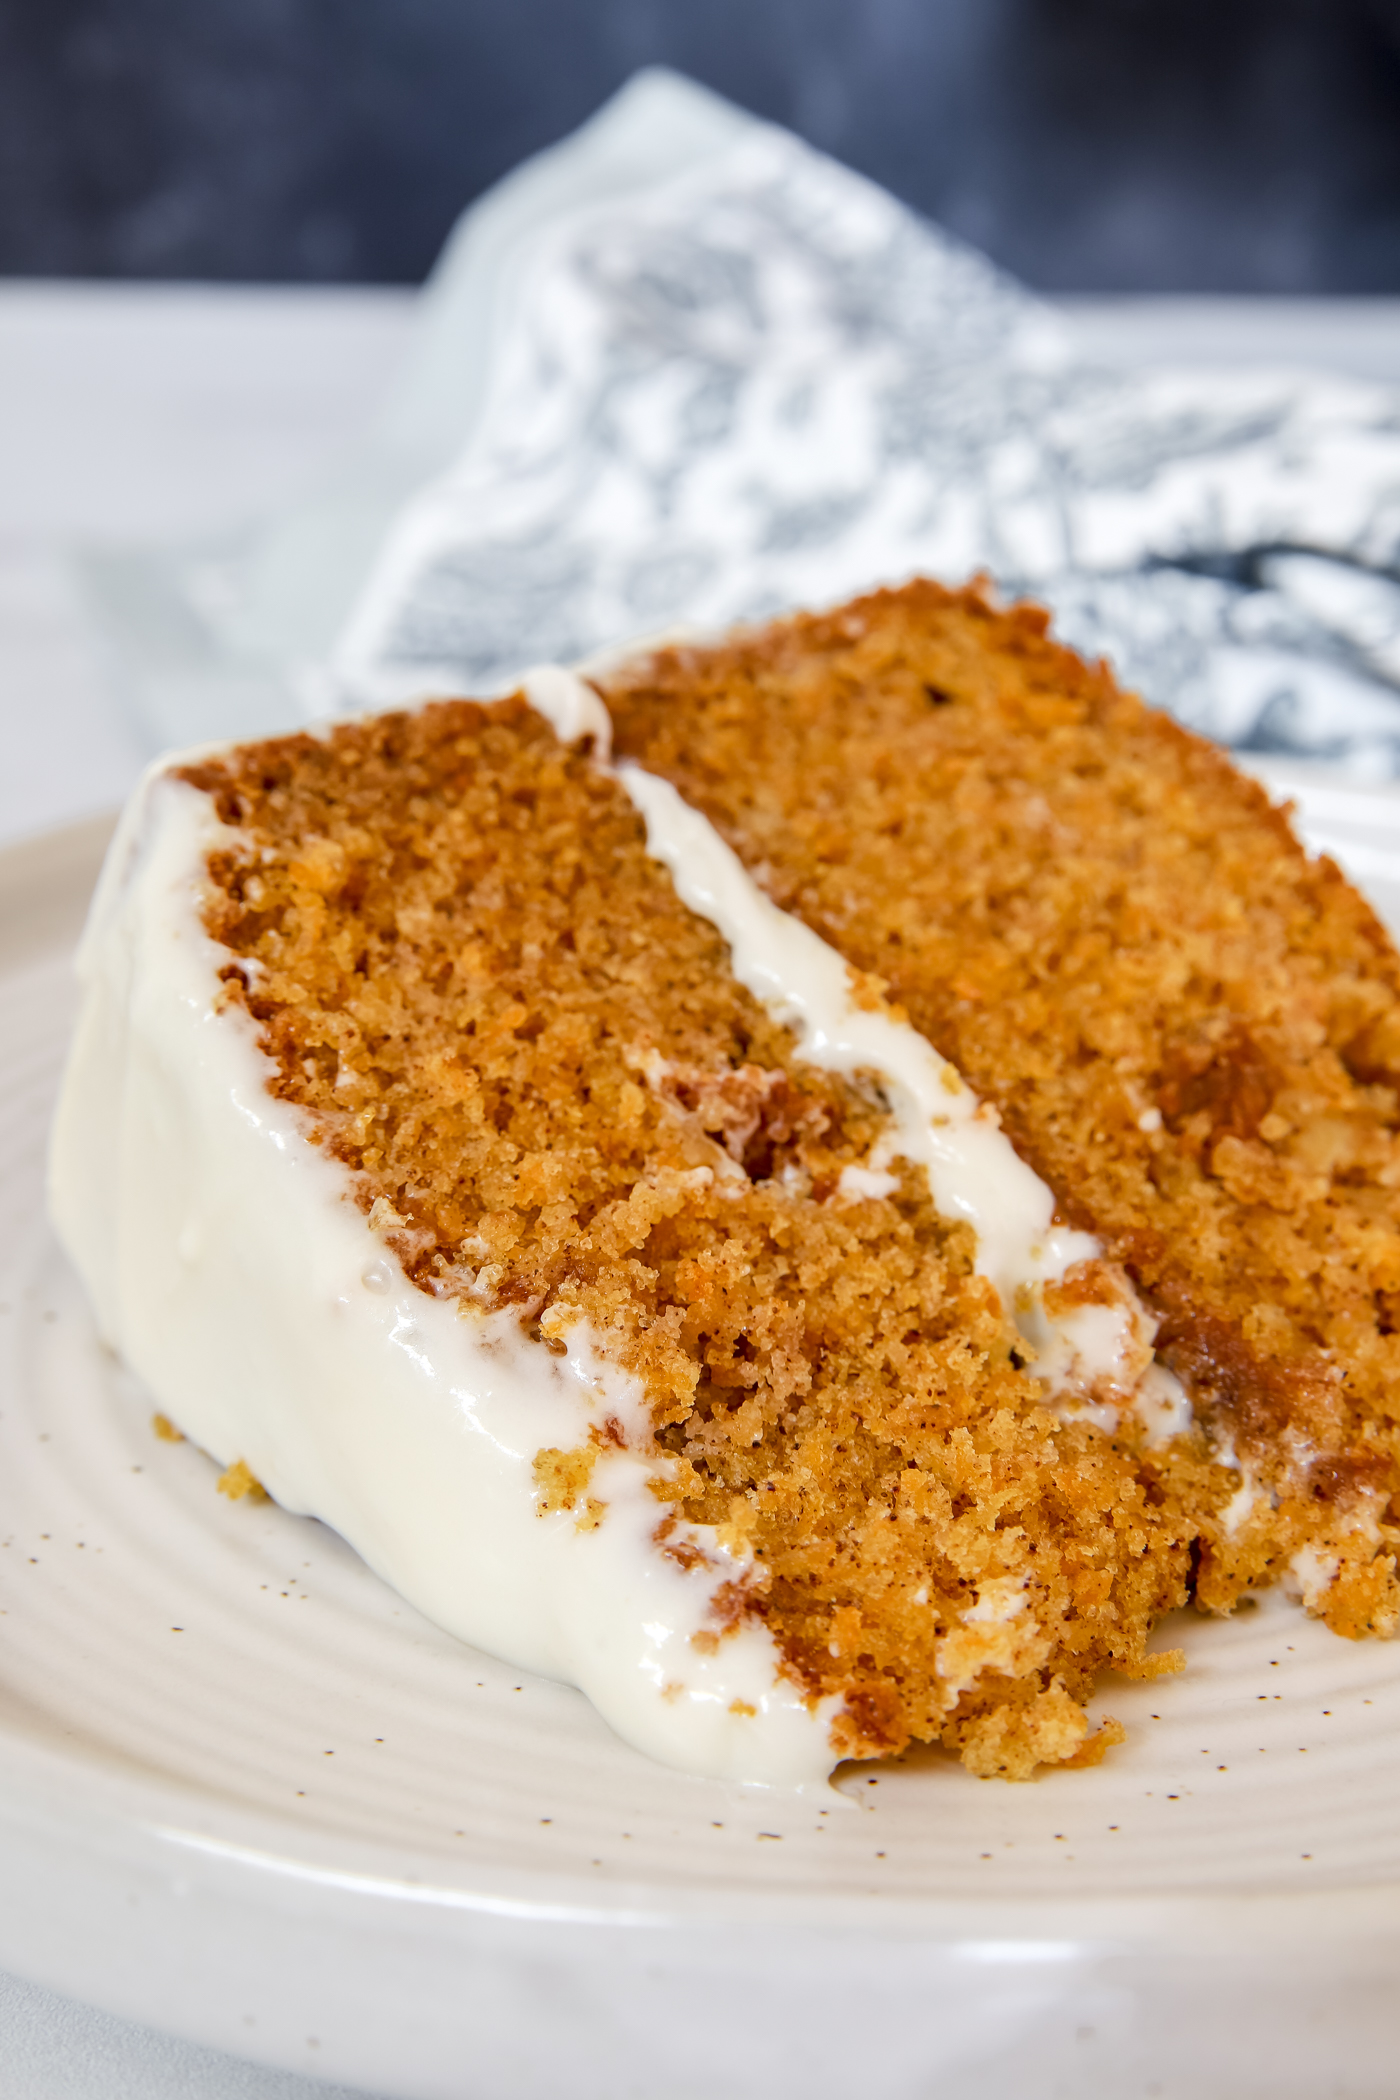 Berkot's Bakery Carrot Cake – Berkot's Online